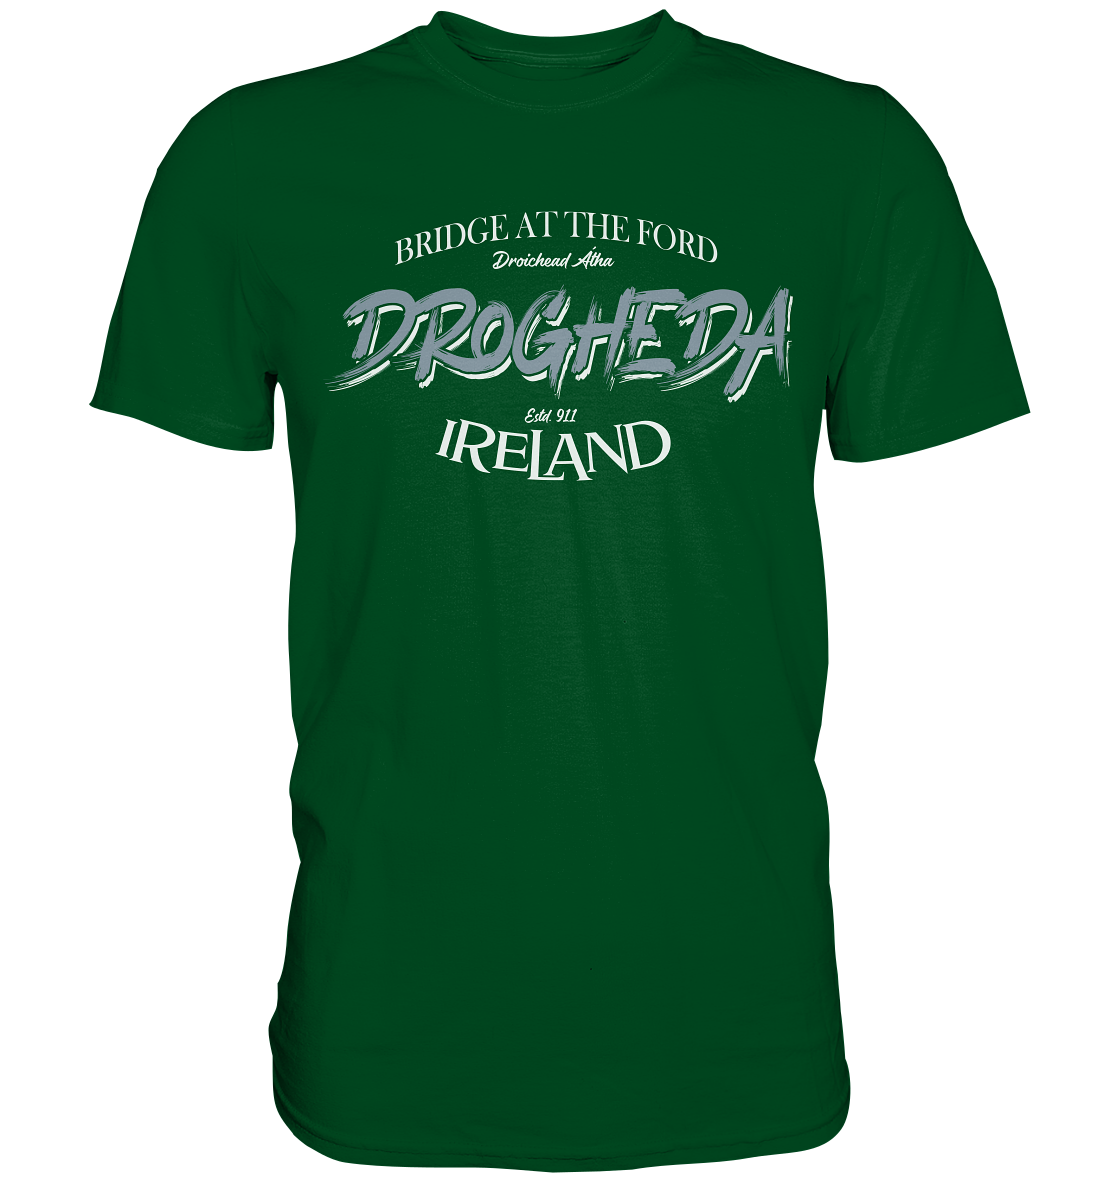 Drogheda "Bridge At The Ford" - Premium Shirt